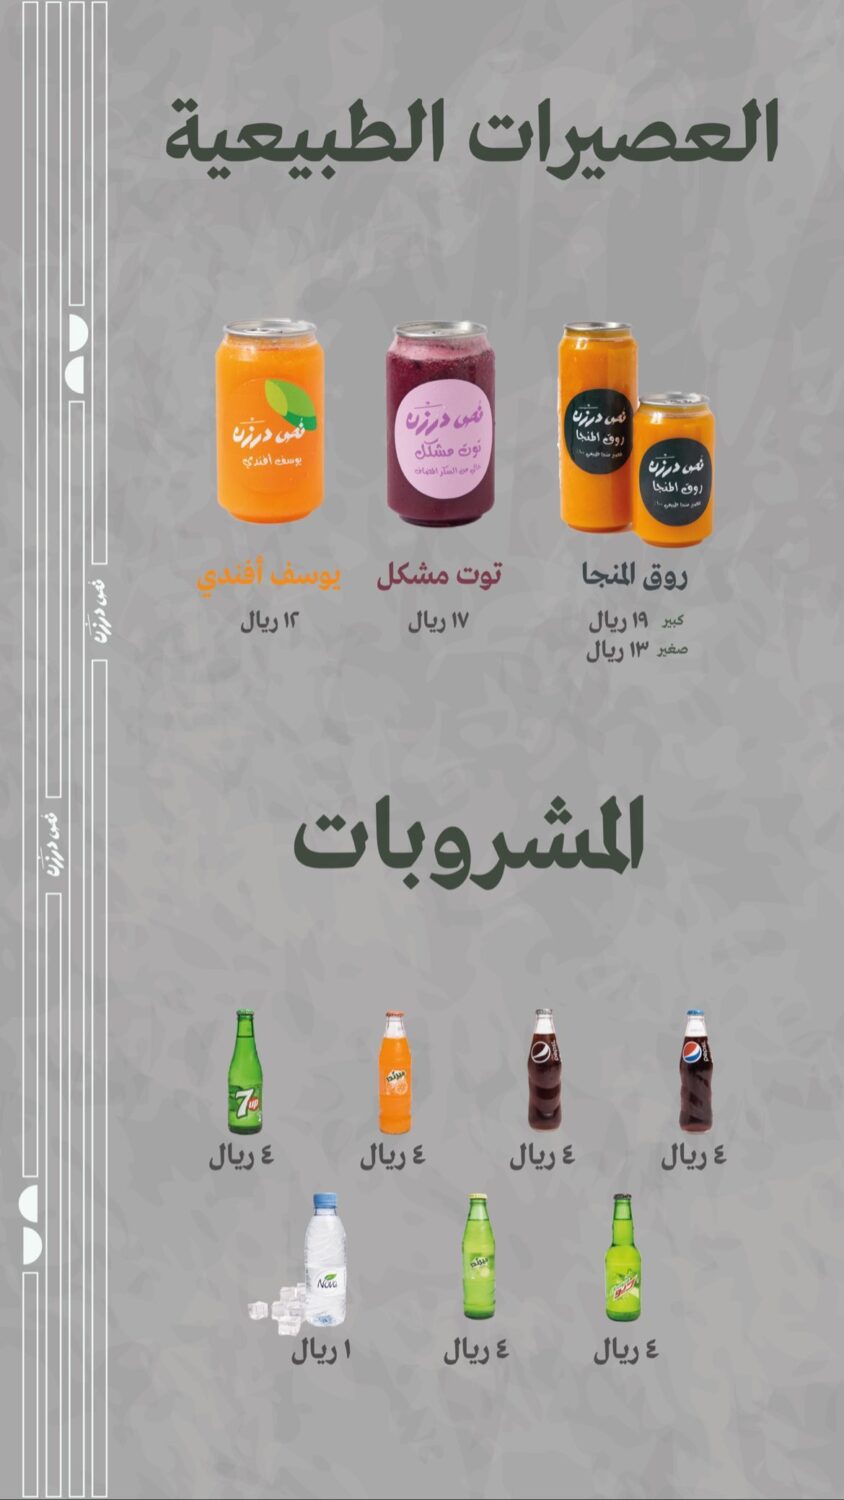 نص درزن شاورما (المنيو الكامل بالصور) الأسعار والتقييم النهائي - الاكل  السعودي